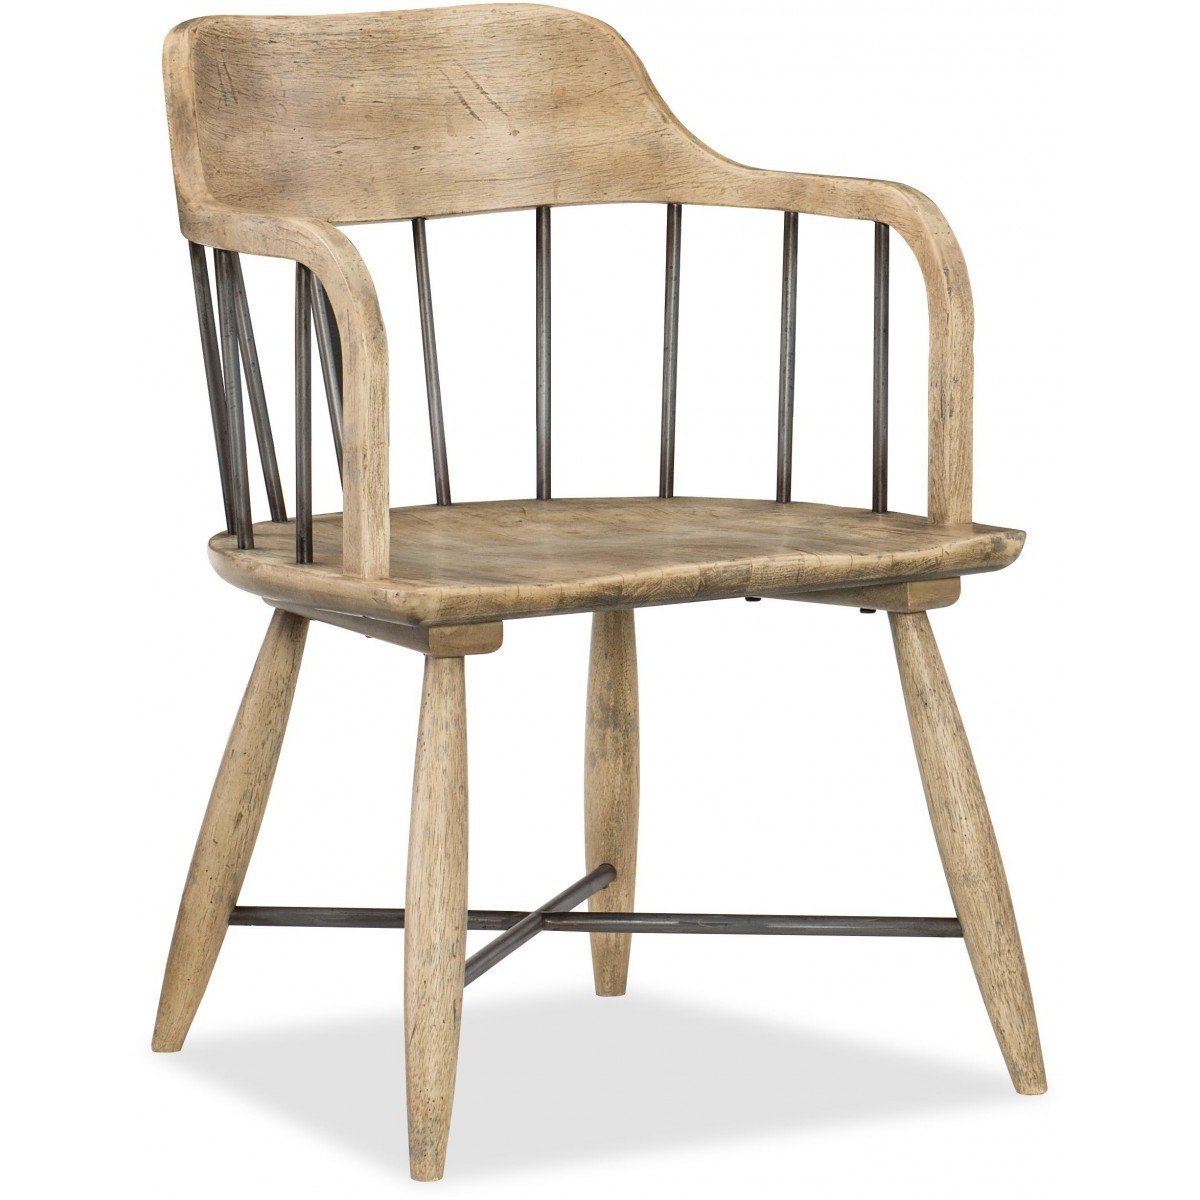 стул обеденный деревянный с подлокотниками